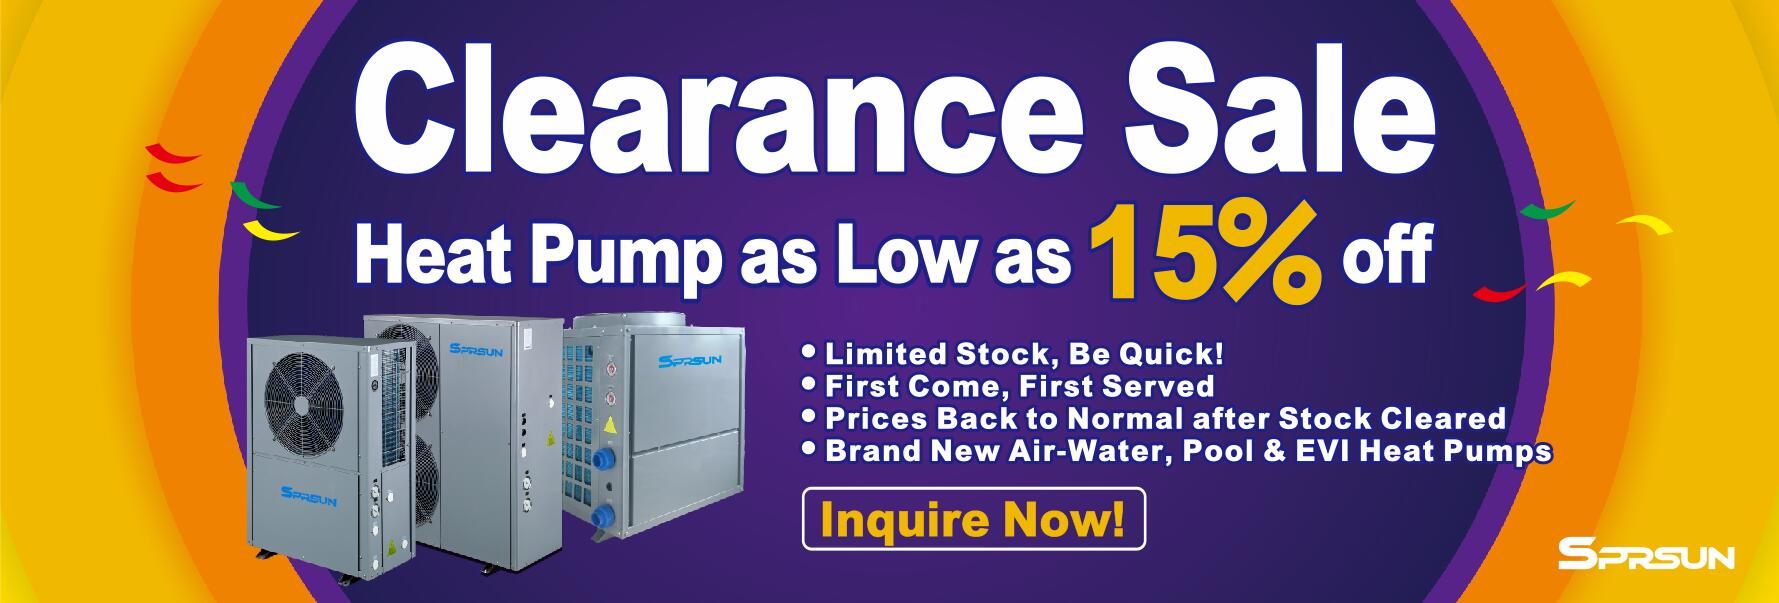 SPRSUN Heat Pump Clearance Sale